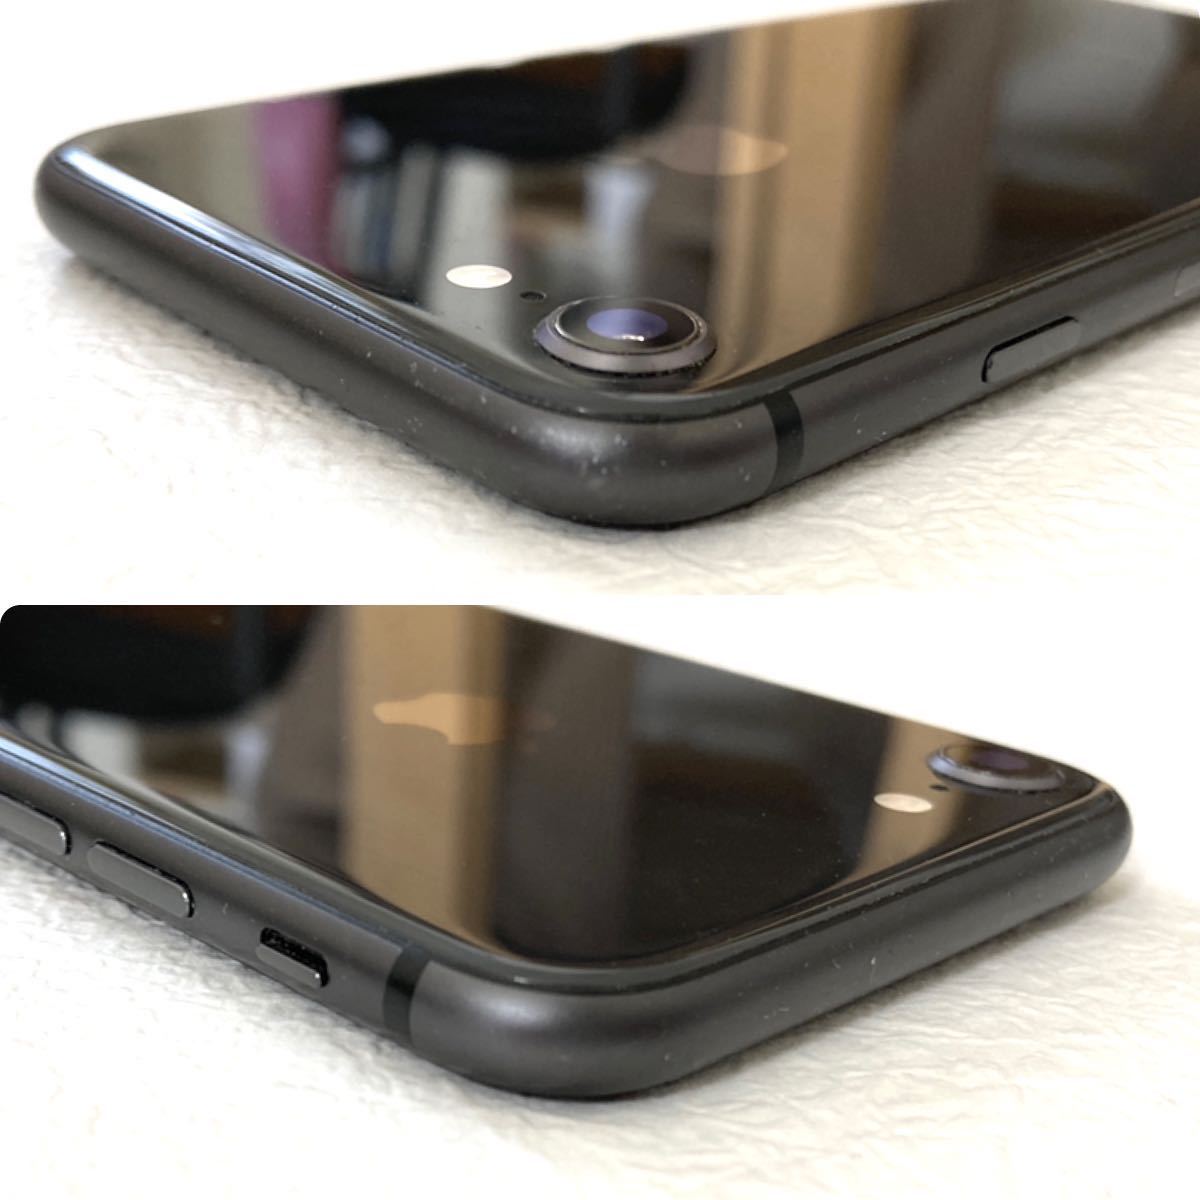 超美品 iPhone8 64GBスペースグレイ 新品液晶画面&バッテリー残量100